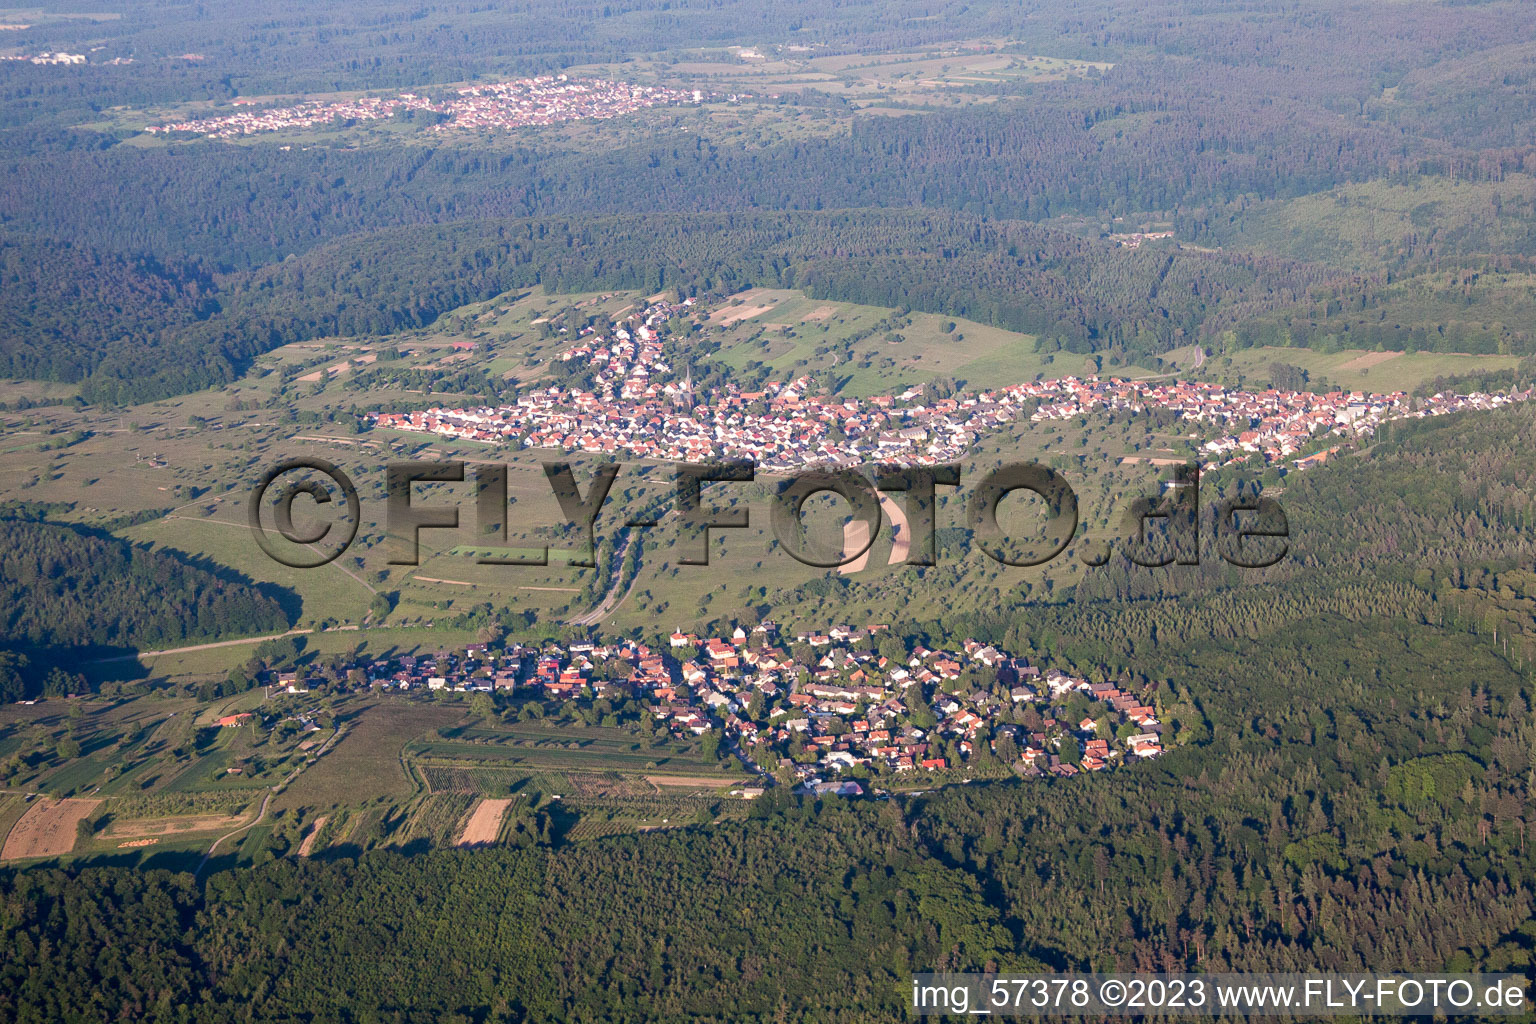 Ortsteil Schluttenbach in Ettlingen im Bundesland Baden-Württemberg, Deutschland von oben gesehen